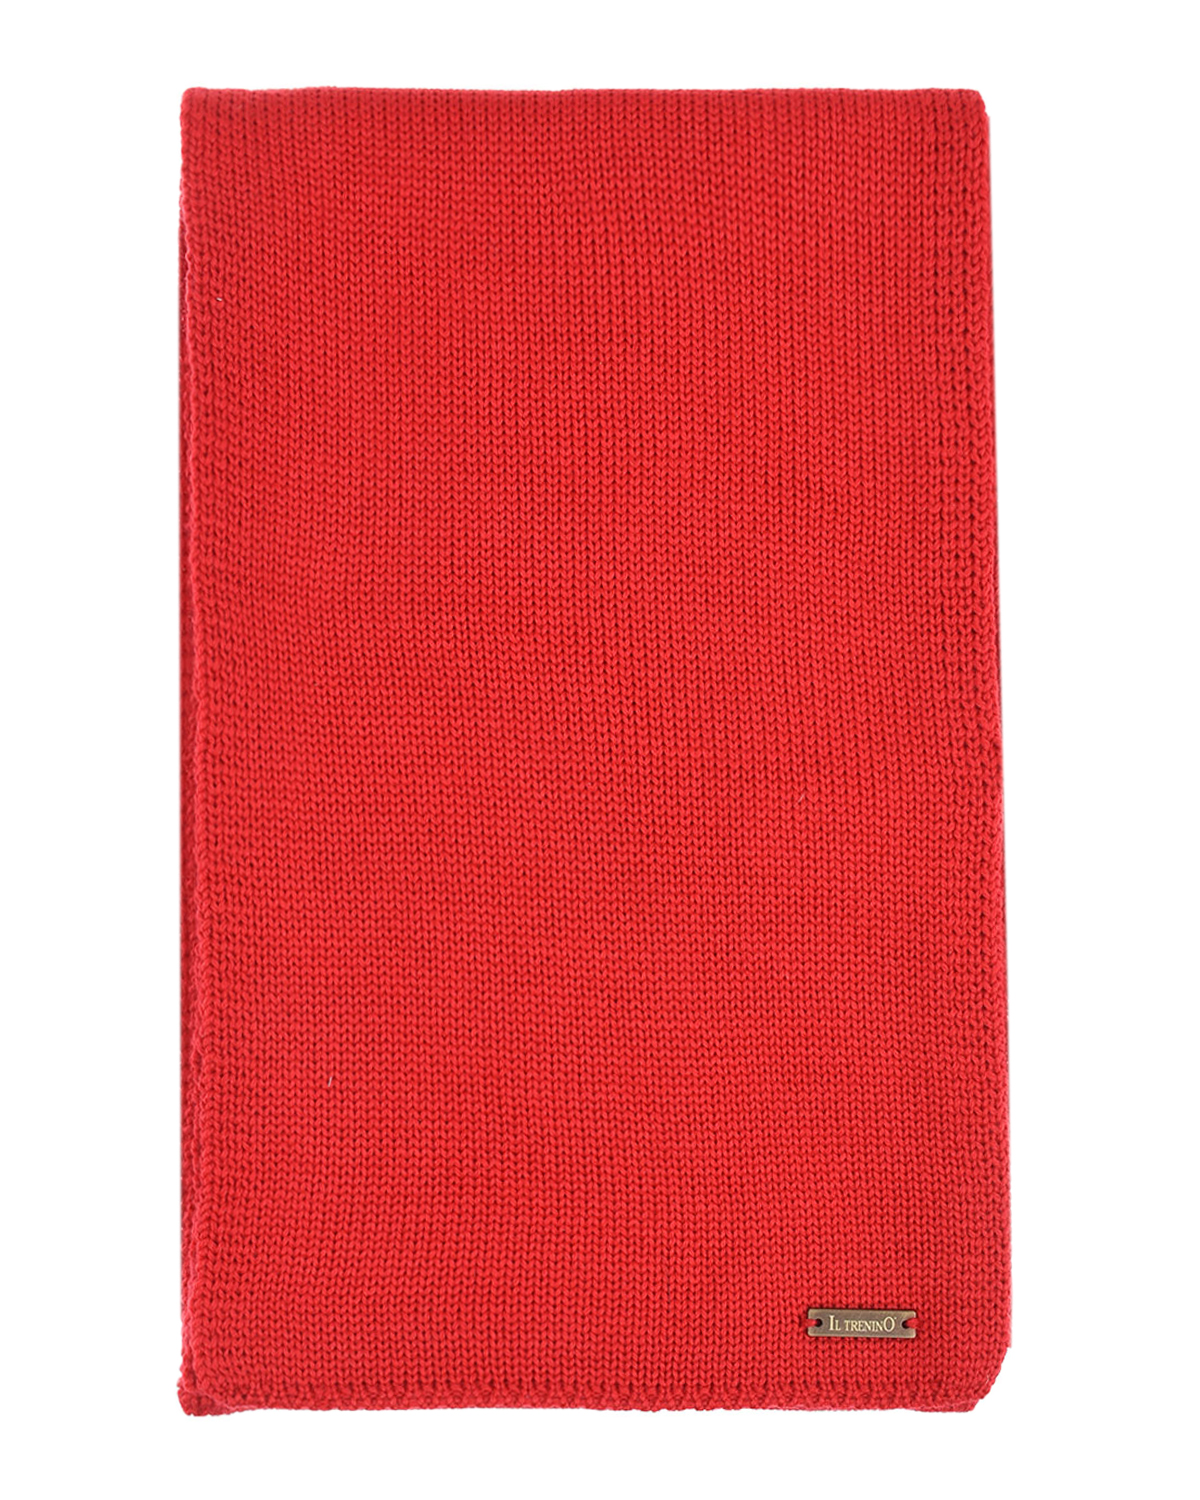 Красный шерстяной шарф, 140x19 см Il Trenino детский, размер unica - фото 2